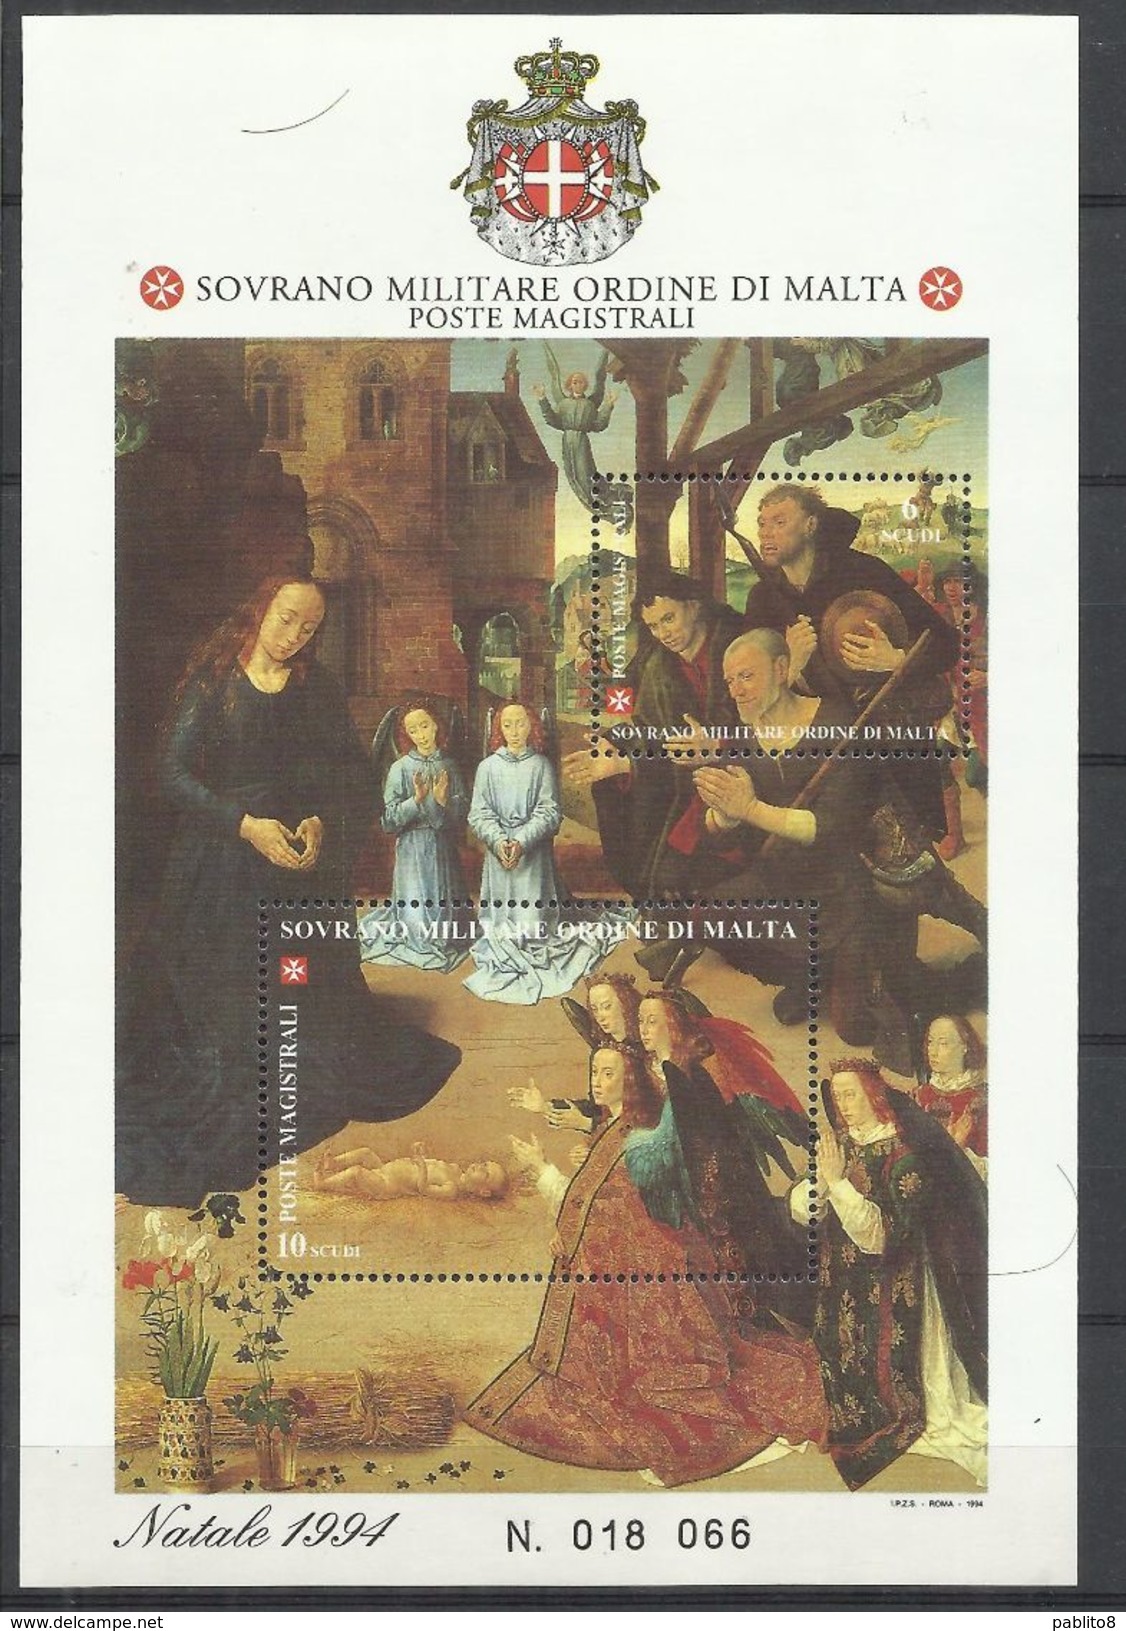 SMOM SOVRANO ORDINE MILITARE DI MALTA 1994 NATALE CHRISTMAS NOEL WEIHNACHTEN BLOCCO FOGLIETTO BLOCK SHEET MNH - Malte (Ordre De)